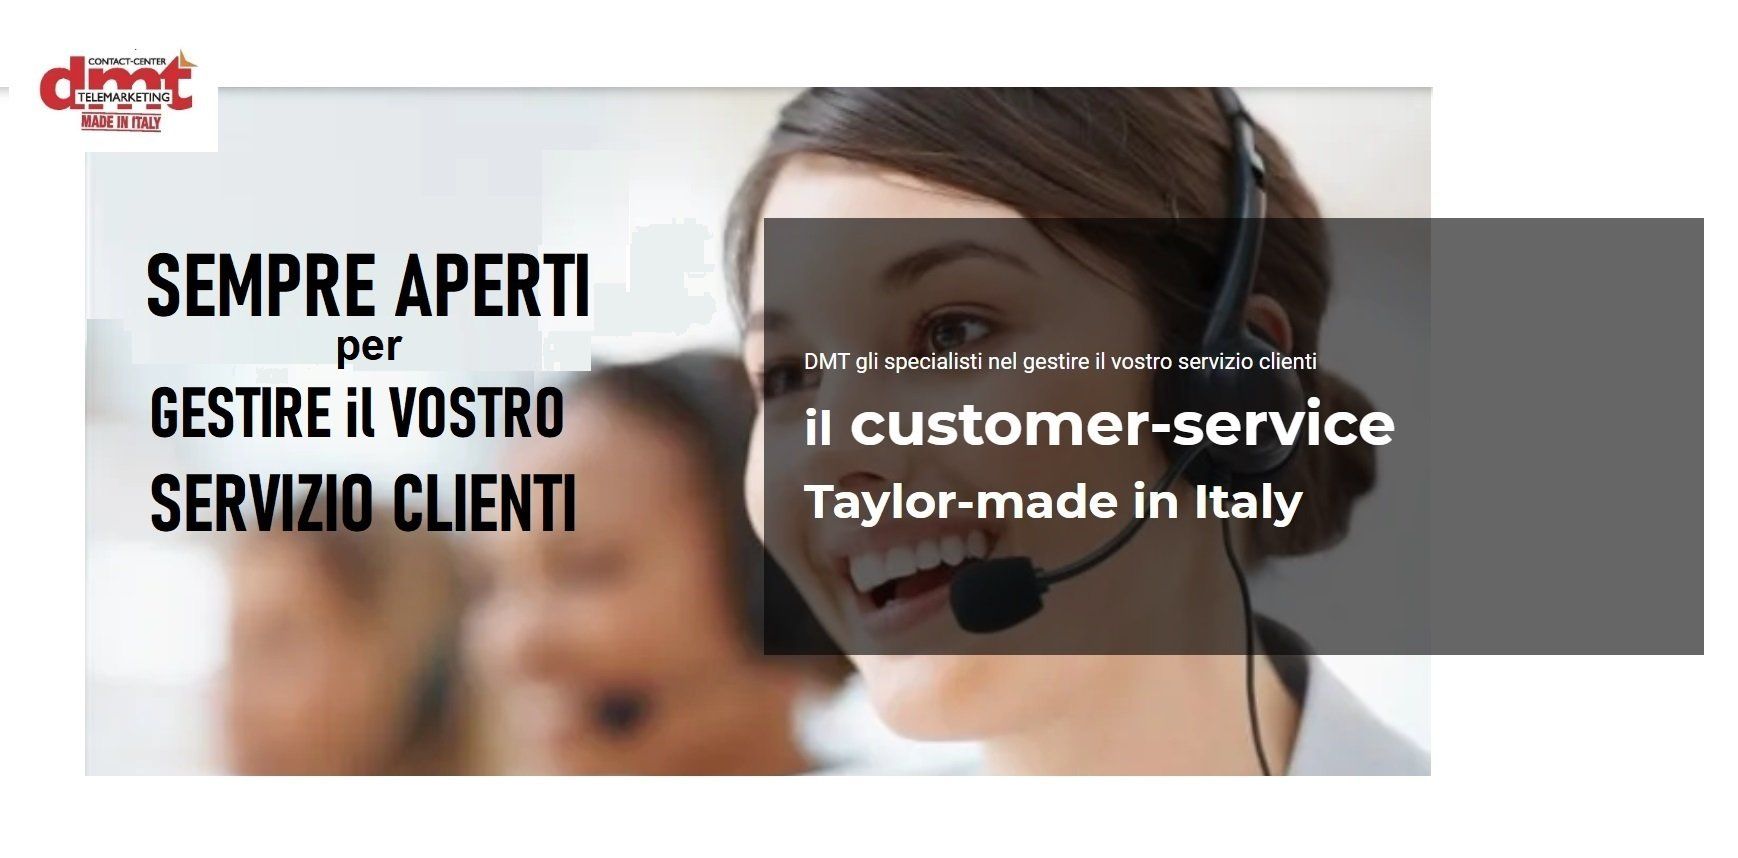 la qualità dell'esperienza di DMT telemarketing; il primo call center italiano